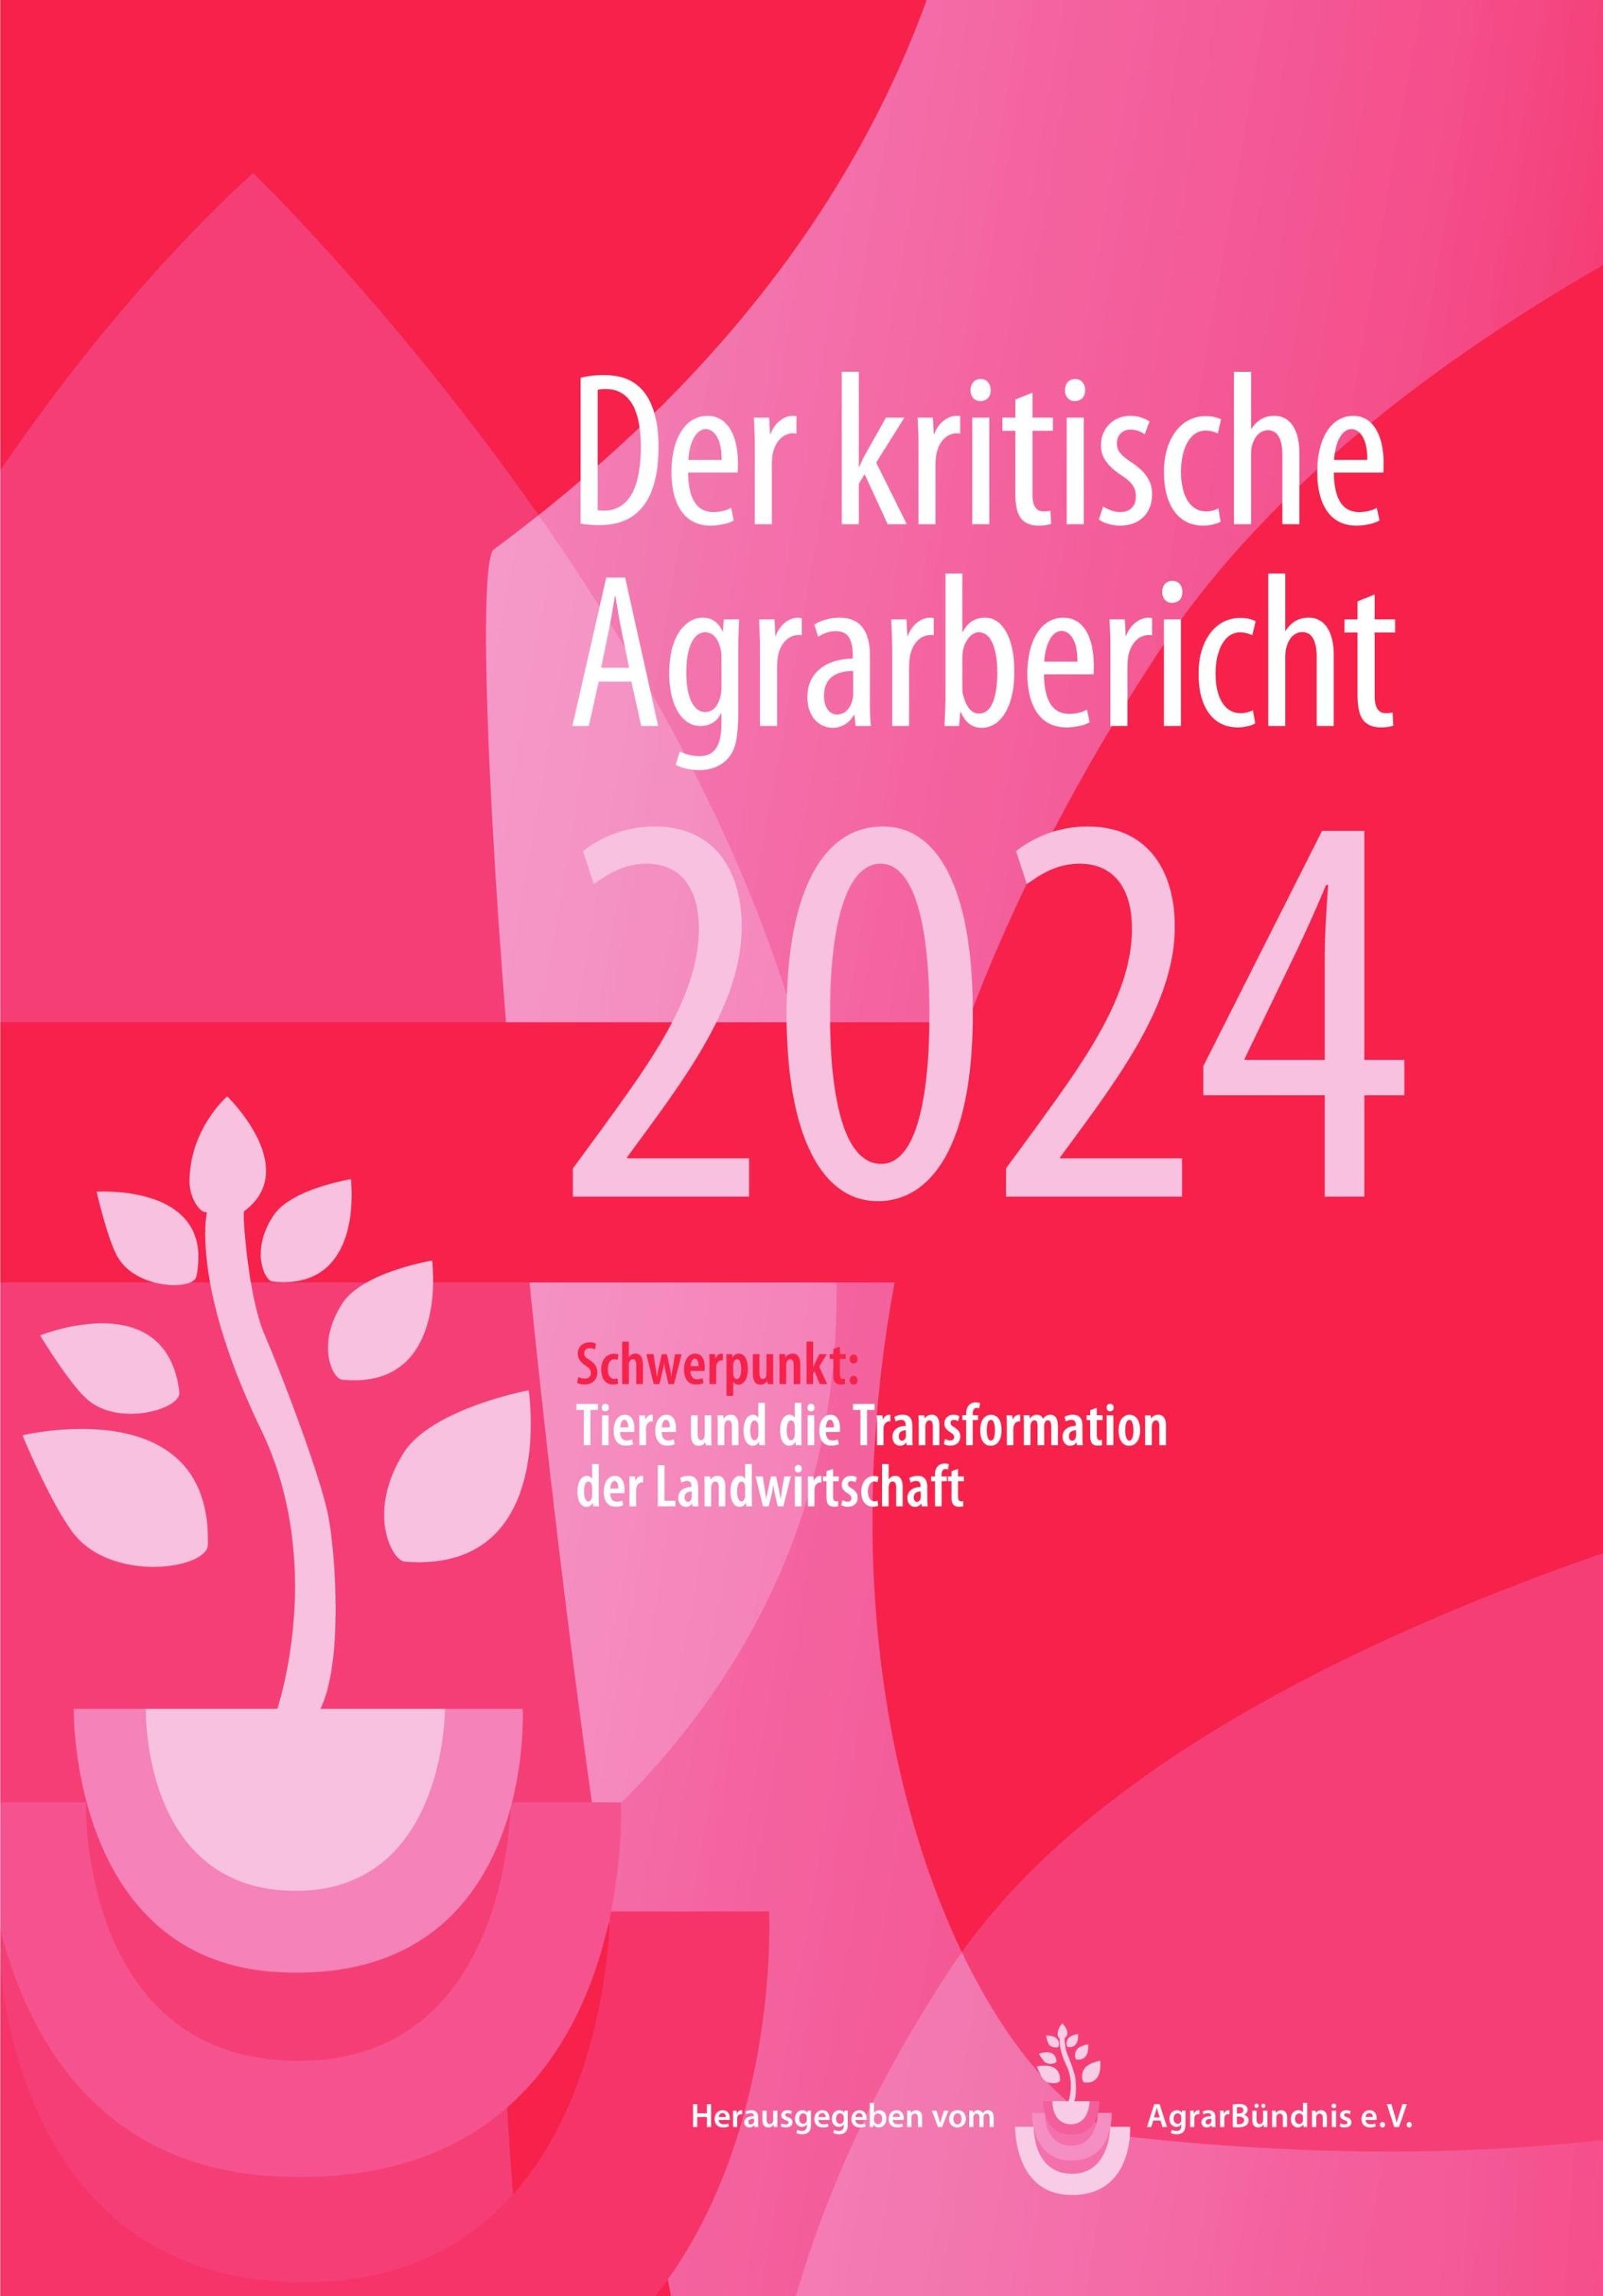 Landwirtschaft - Der Kritische Agrarbericht. Daten  Berichte  Hintergründe ... / Landwirtschaft - Der Kritische Agrarbericht 2024  Taschenbuch